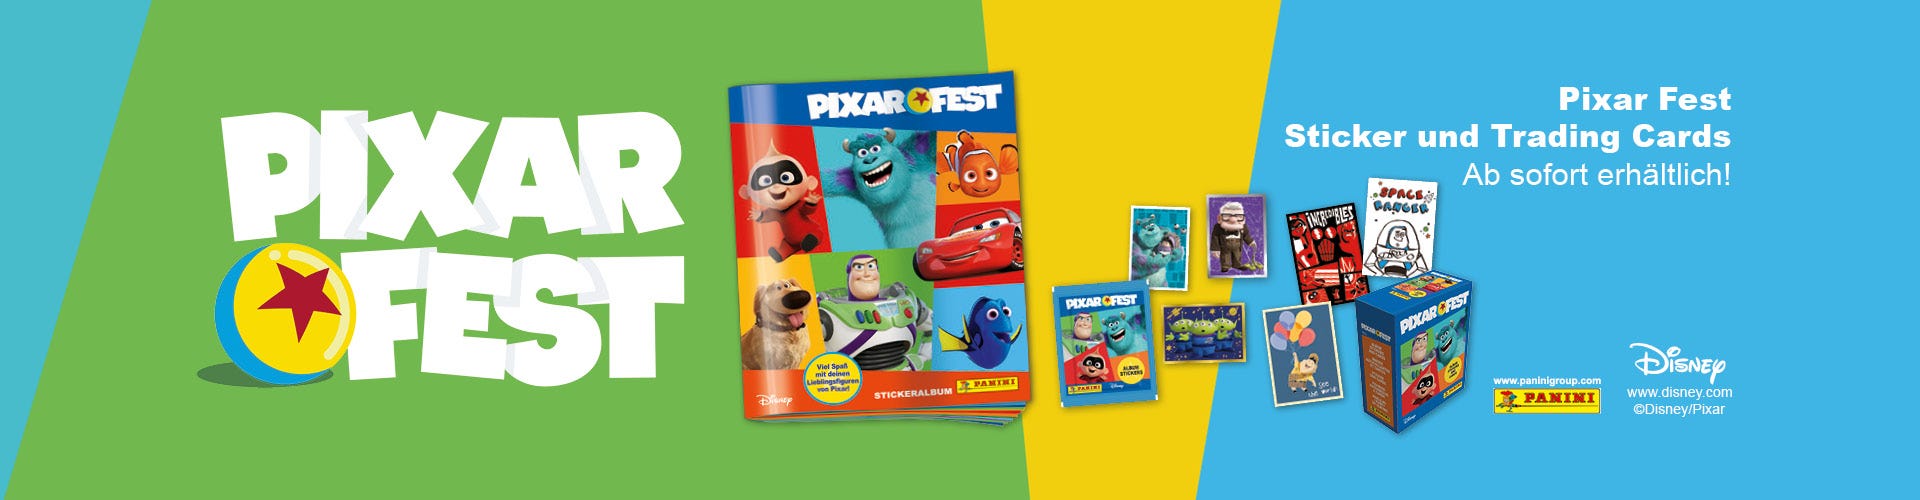 Disney Pixar Fest Sticker und Cards Kollektion Banner